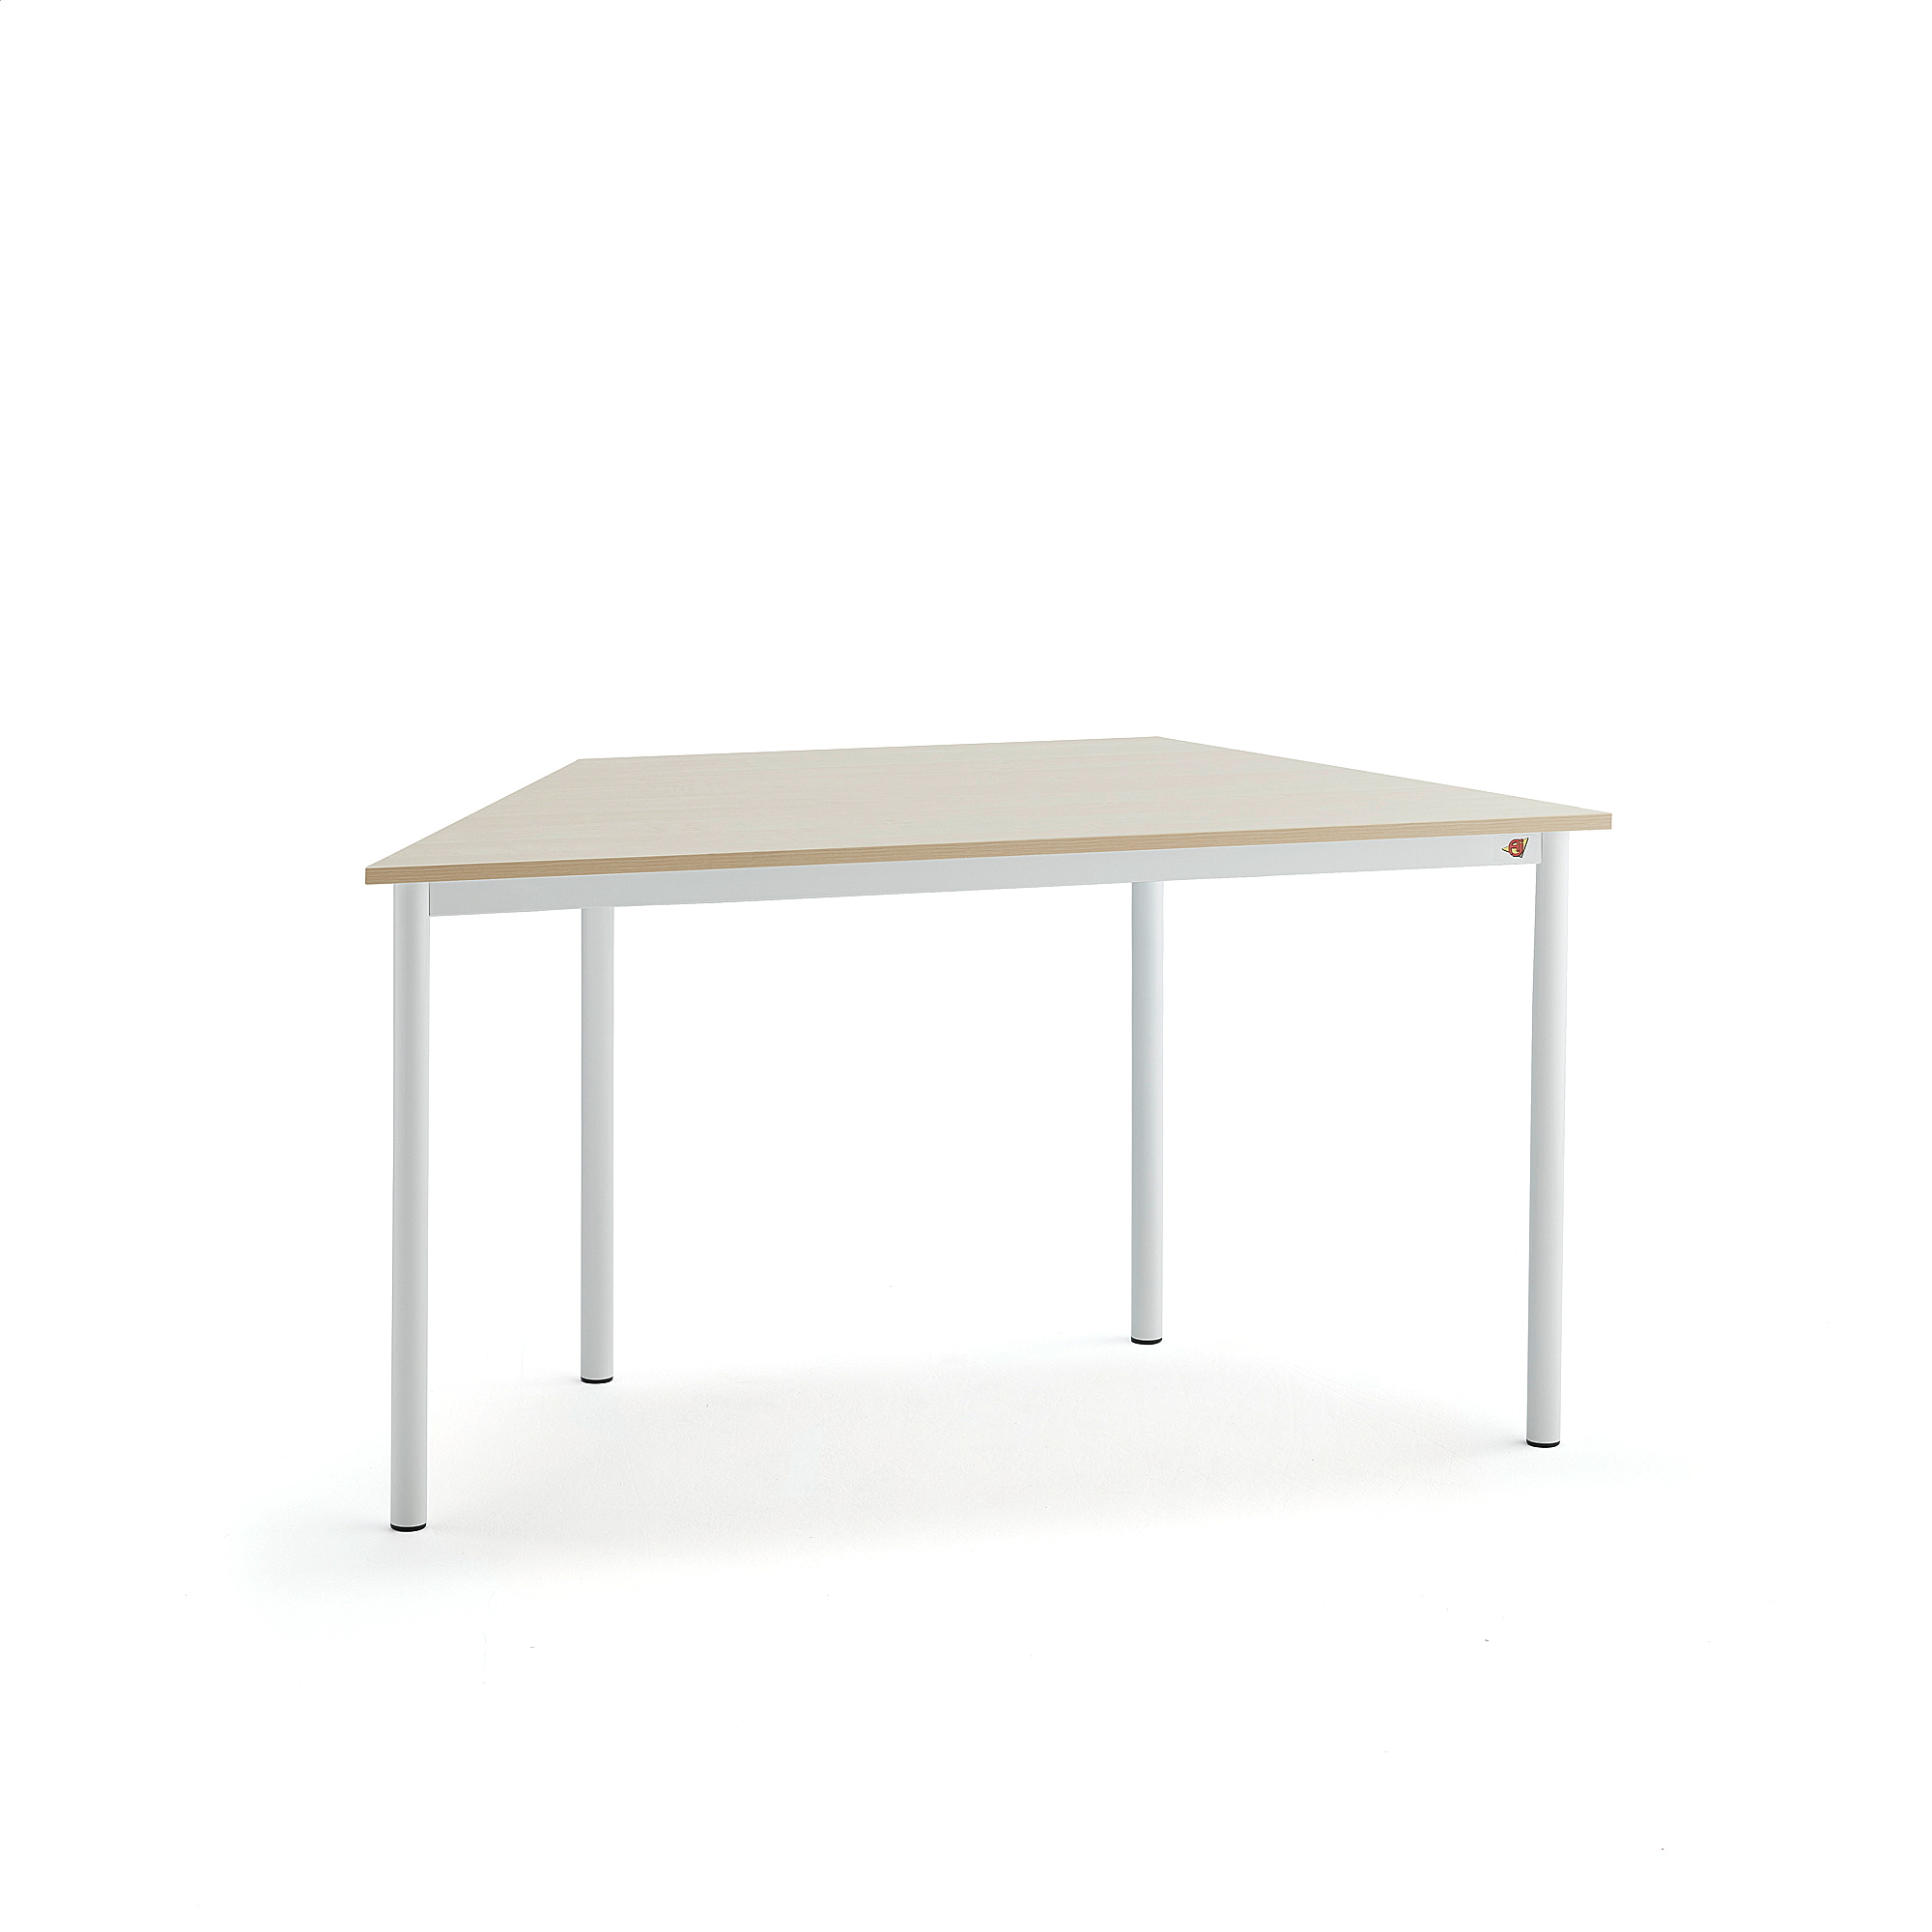 Stůl BORÅS TRAPETS, 1400x700x720 mm, bílé nohy, HPL deska, bříza